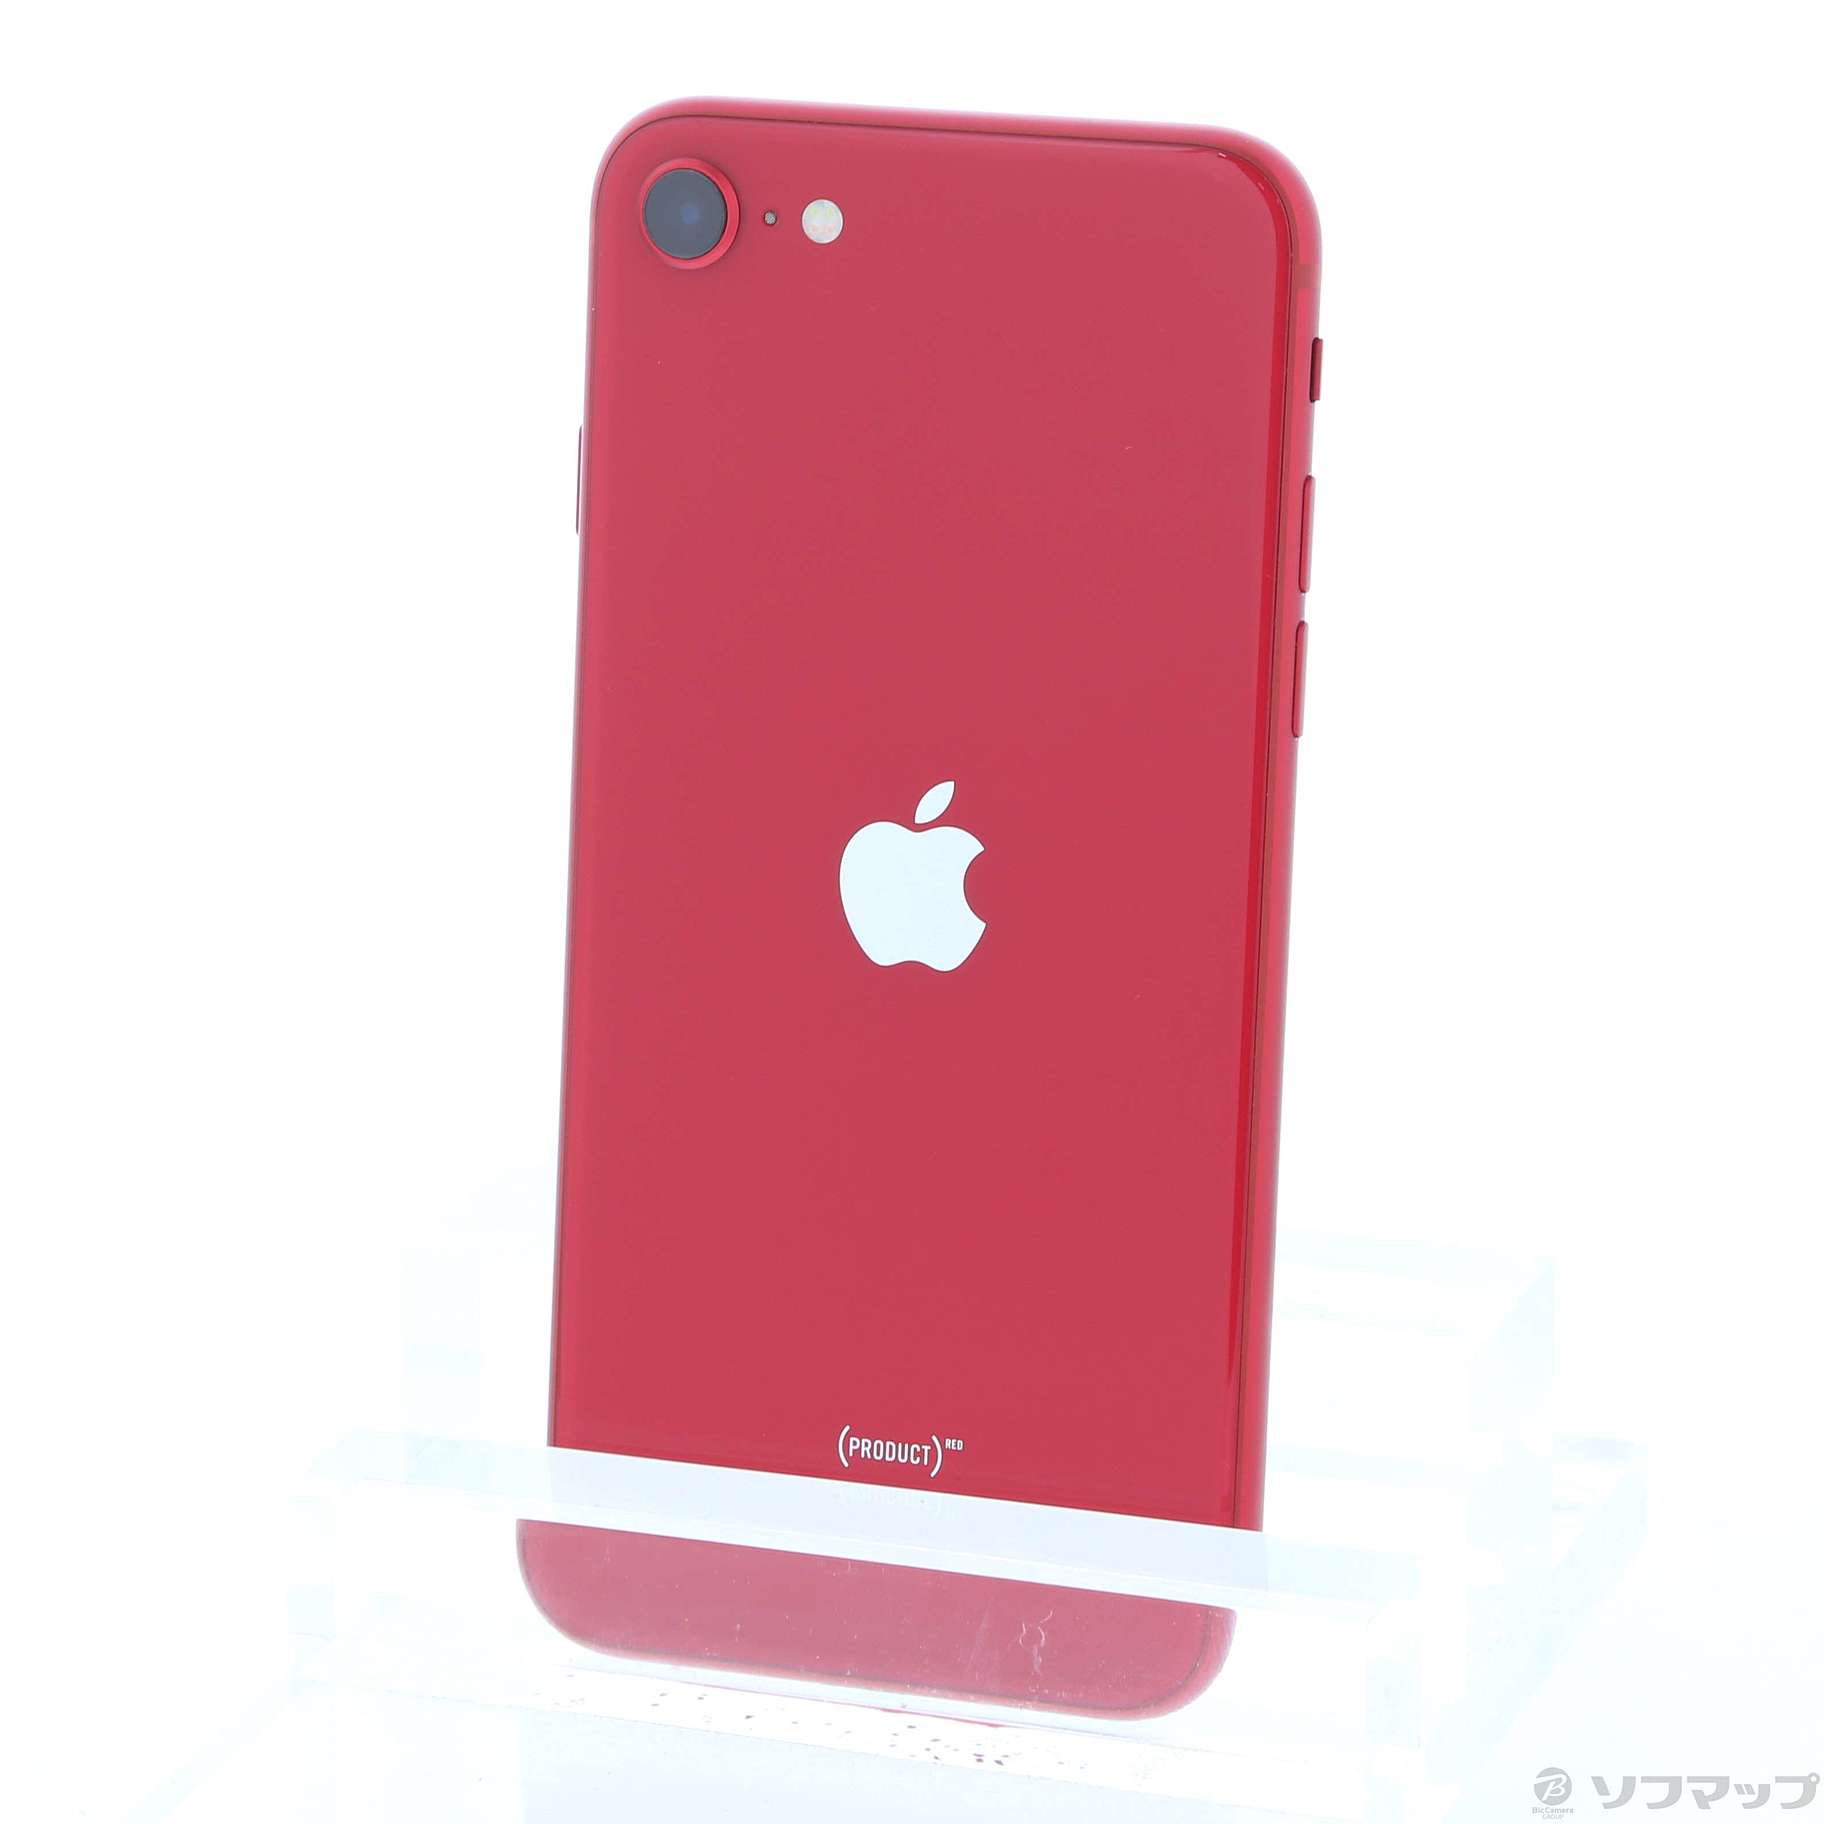 スマートフォン本体新品未使用 iPhone 8 plus 64GB red simフリー 